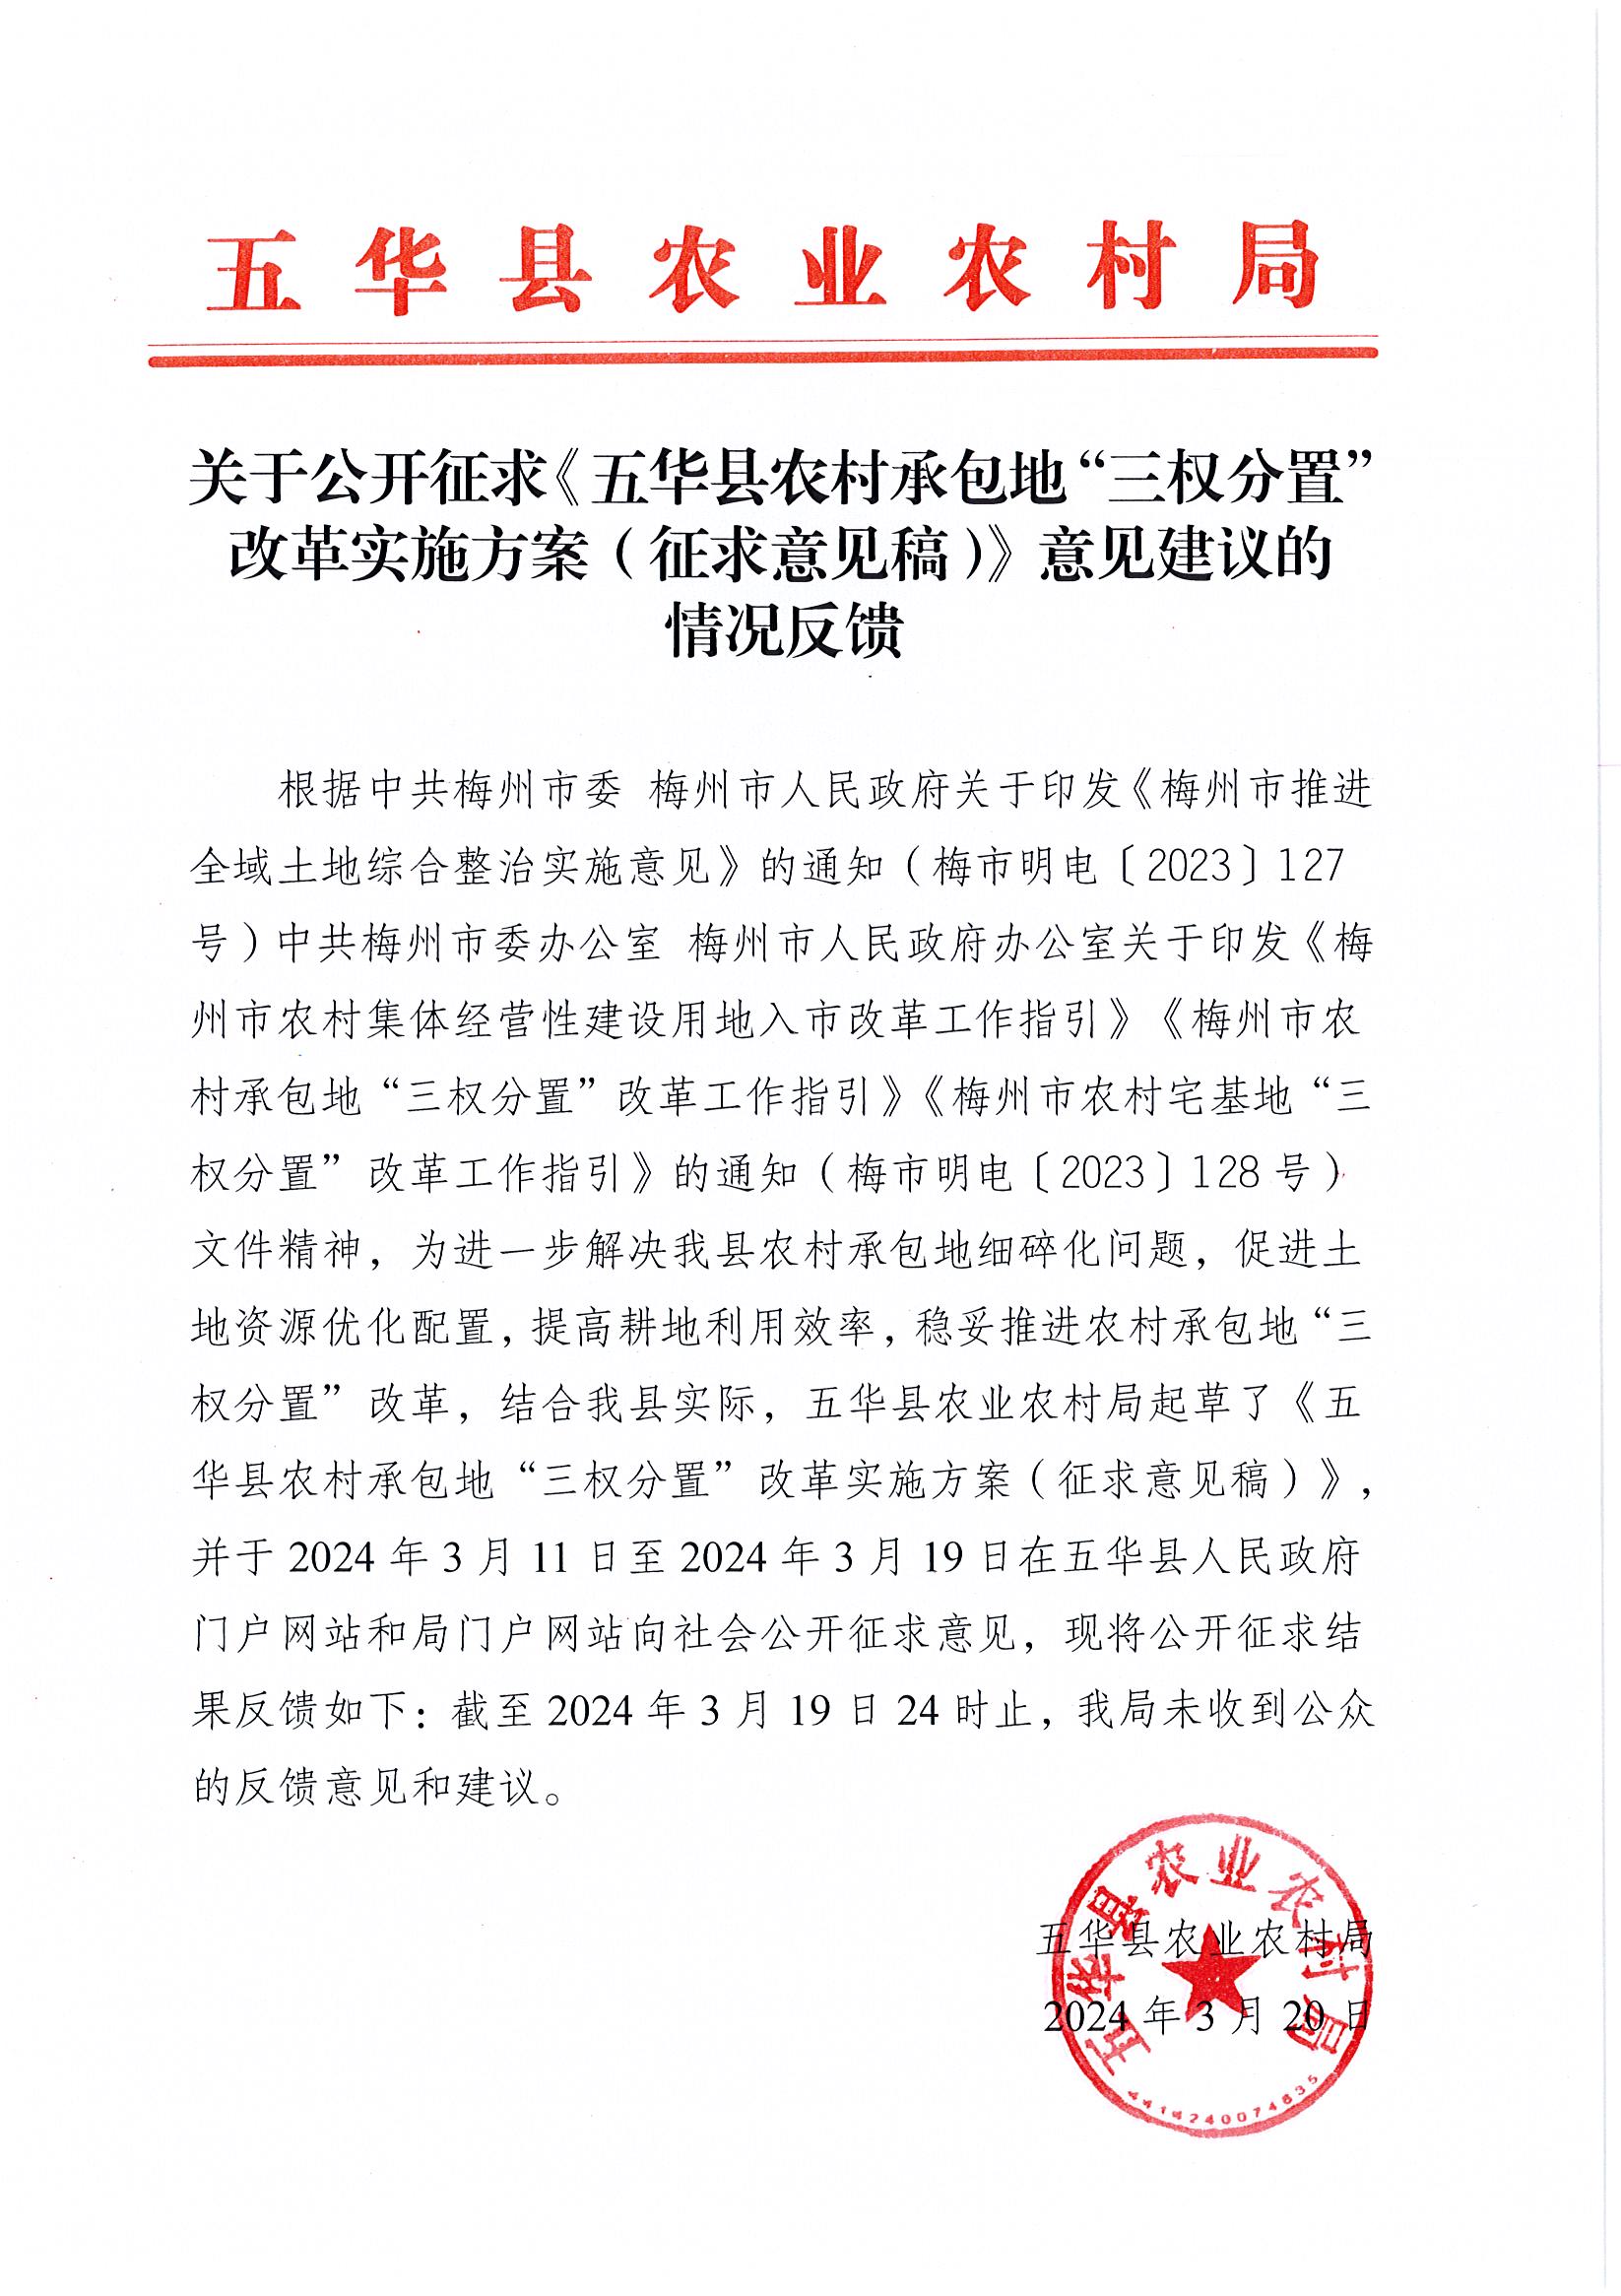 关于公开征求《五华县农村承包地“三权分置”   改革实施方案（征求意见稿）》意见建议的情况反馈.jpg